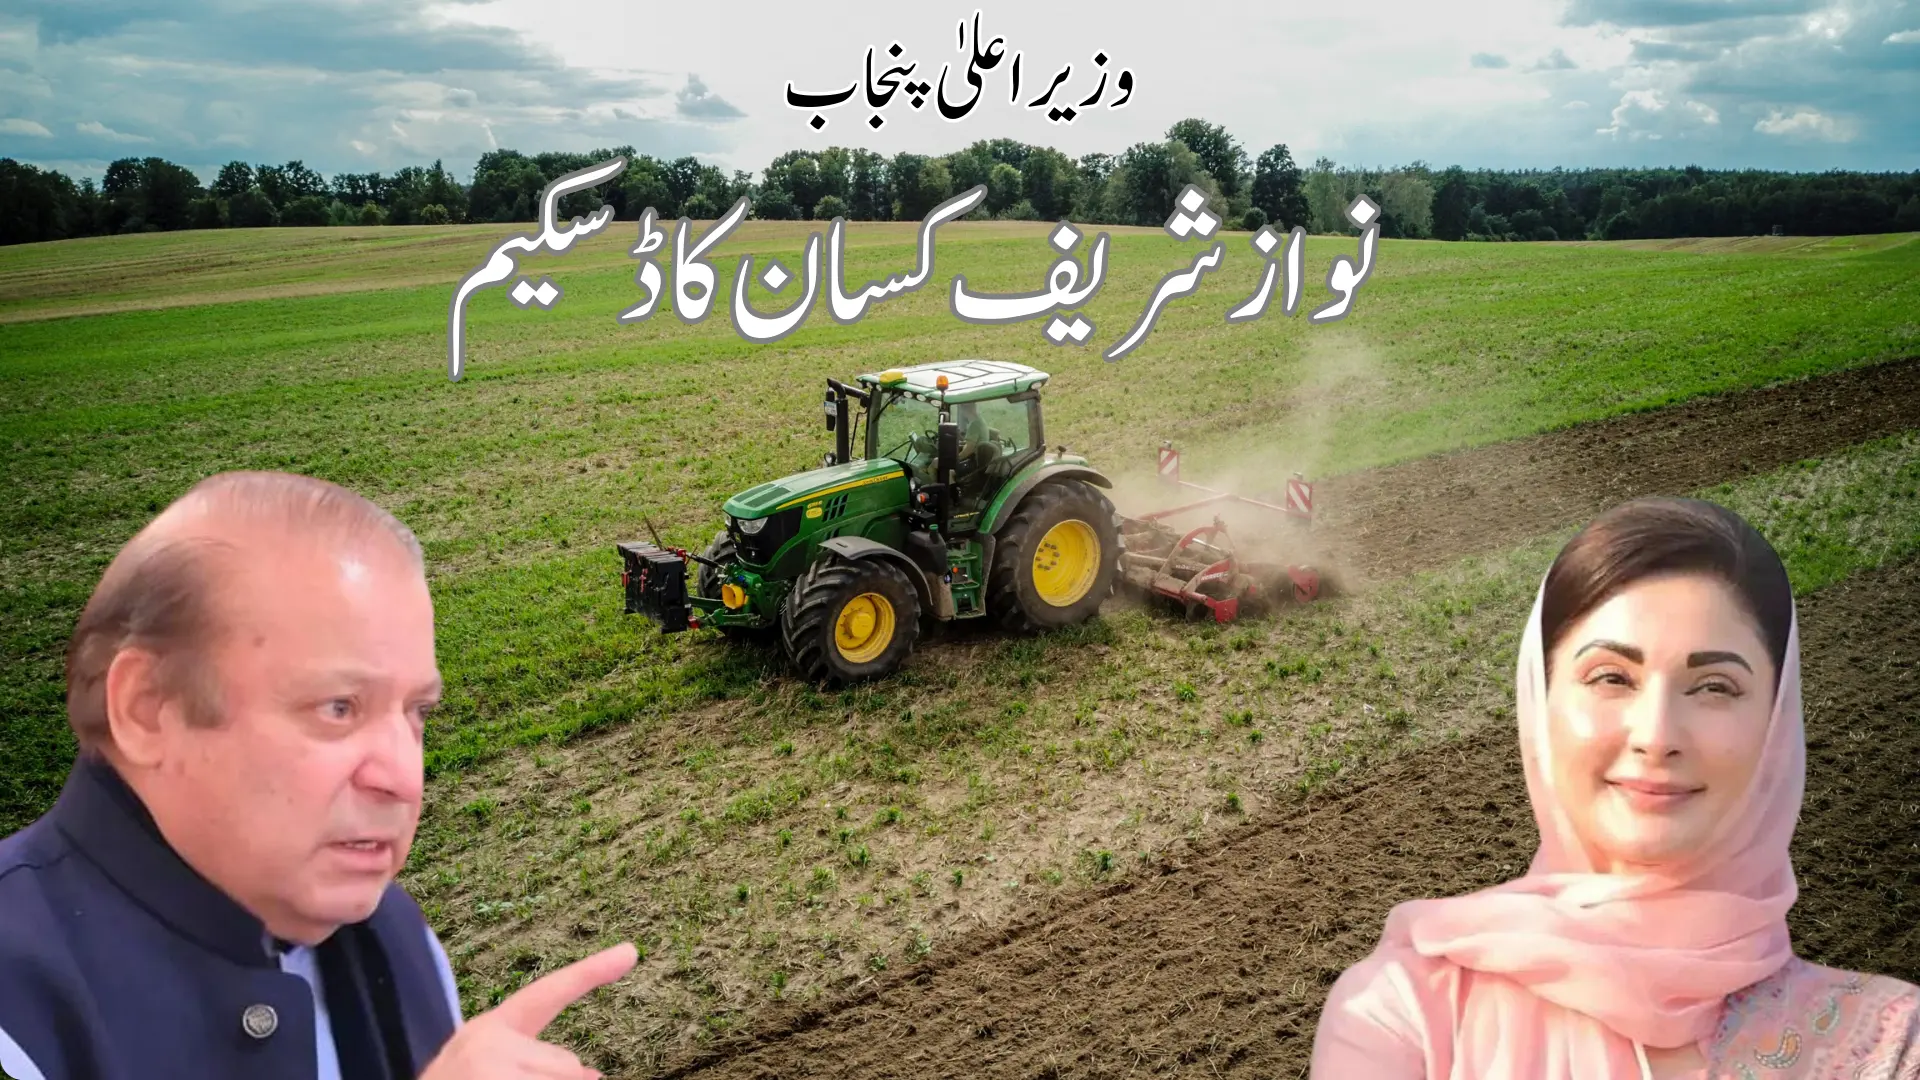 nawaz Sharif kisan card apply online image